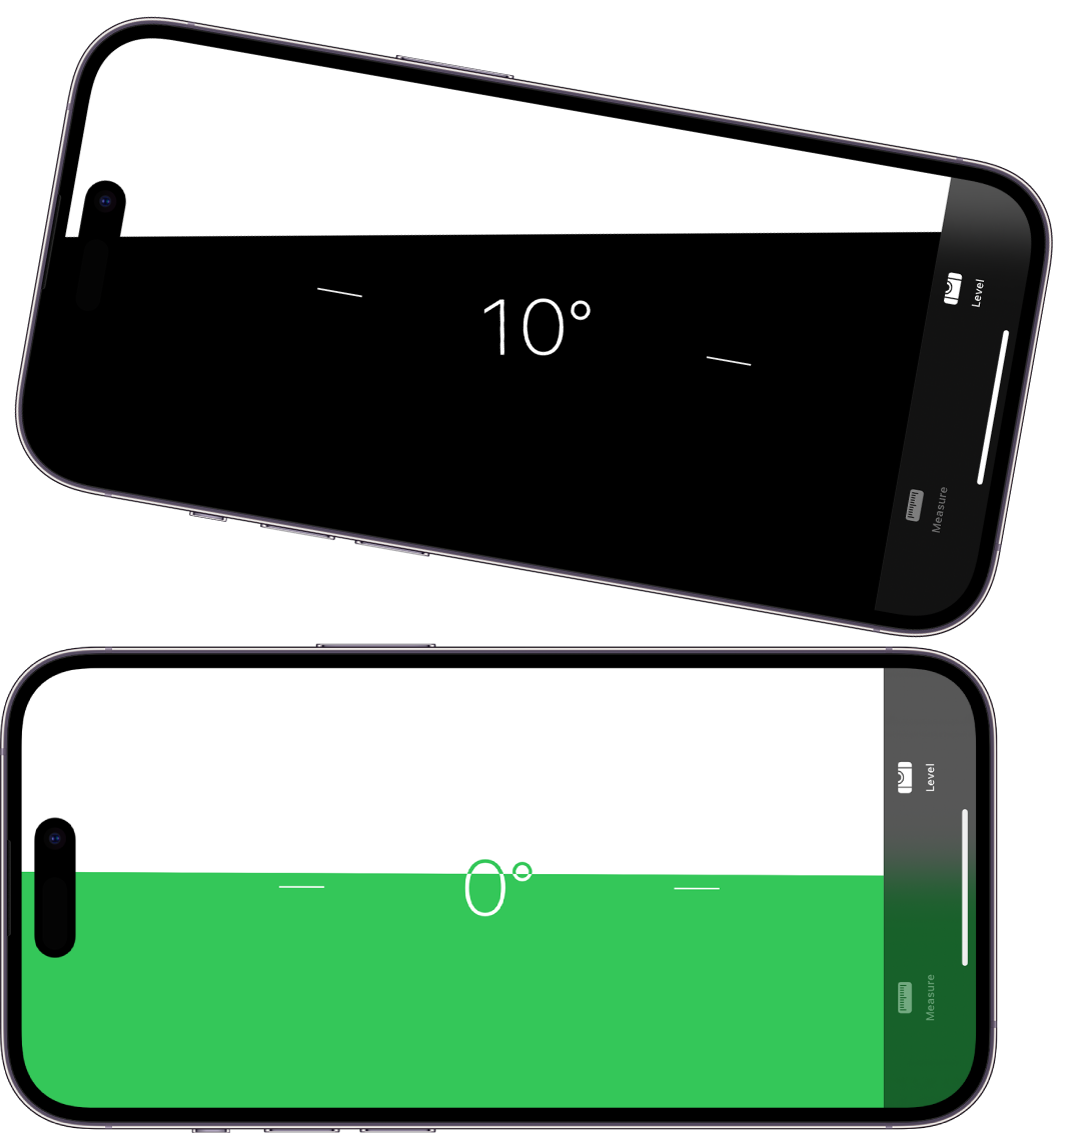 Ekrani i nivelit në aplikacionin Measure. Sipër, iPhone është anuar në një kënd prej 10 gradësh; poshtë, iPhone është në nivel.